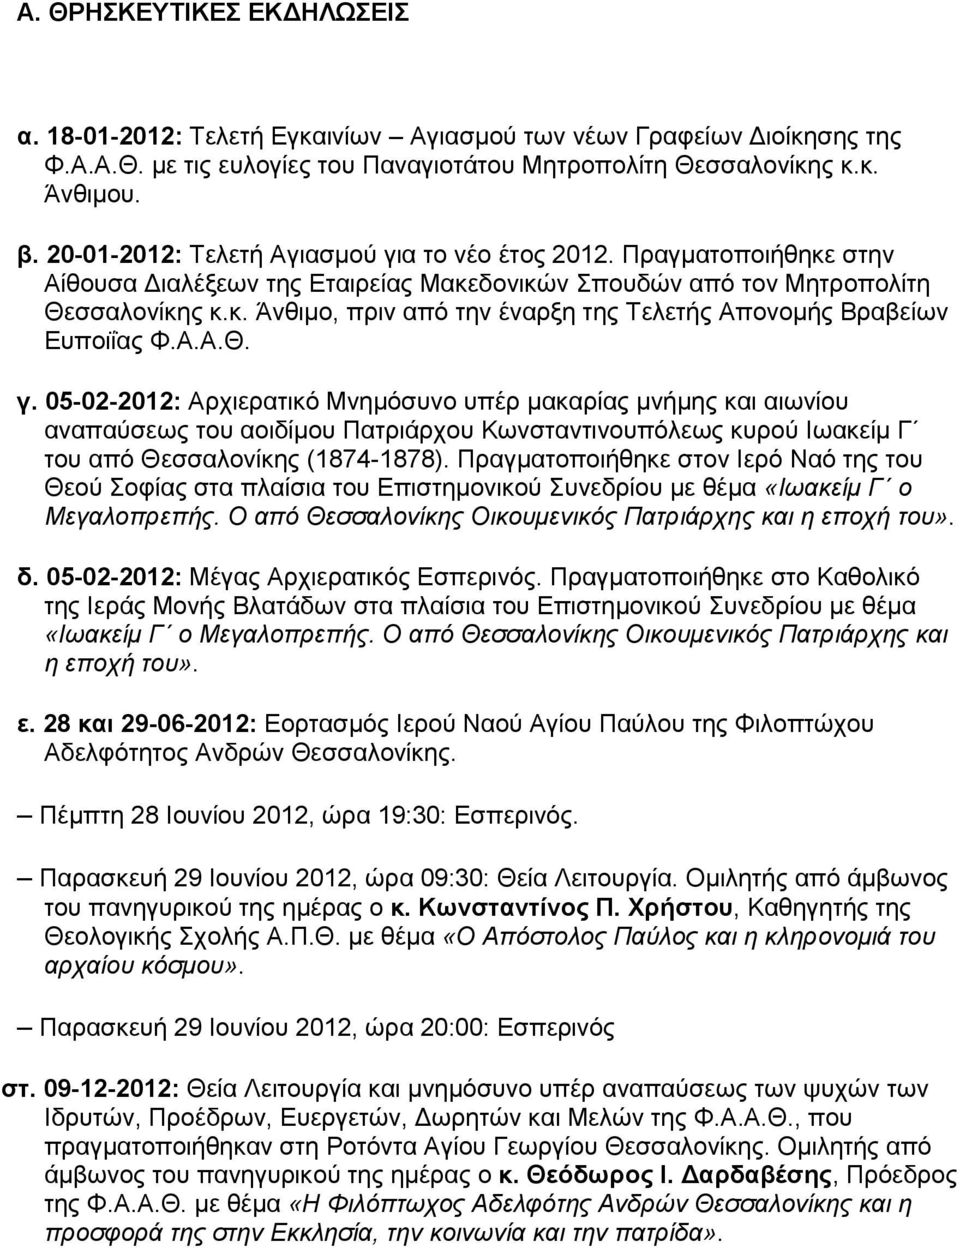 Α.Α.Θ. γ. 05-02-2012: Αρχιερατικό Μνημόσυνο υπέρ μακαρίας μνήμης και αιωνίου αναπαύσεως του αοιδίμου Πατριάρχου Κωνσταντινουπόλεως κυρού Ιωακείμ Γ του από Θεσσαλονίκης (1874-1878).